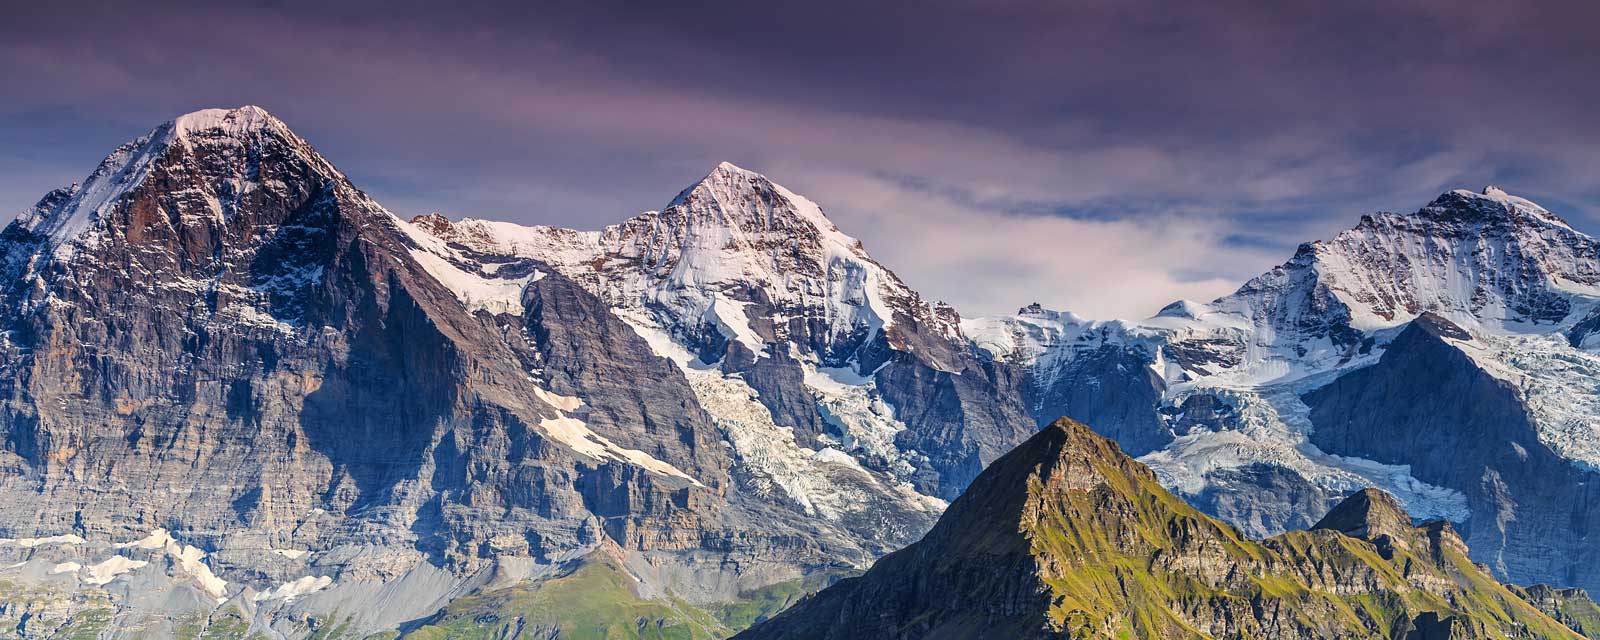 Αυτό το βουνό είναι ένα από τα πιο επικίνδυνα μέρη στον πλανήτη – Δείτε γιατί